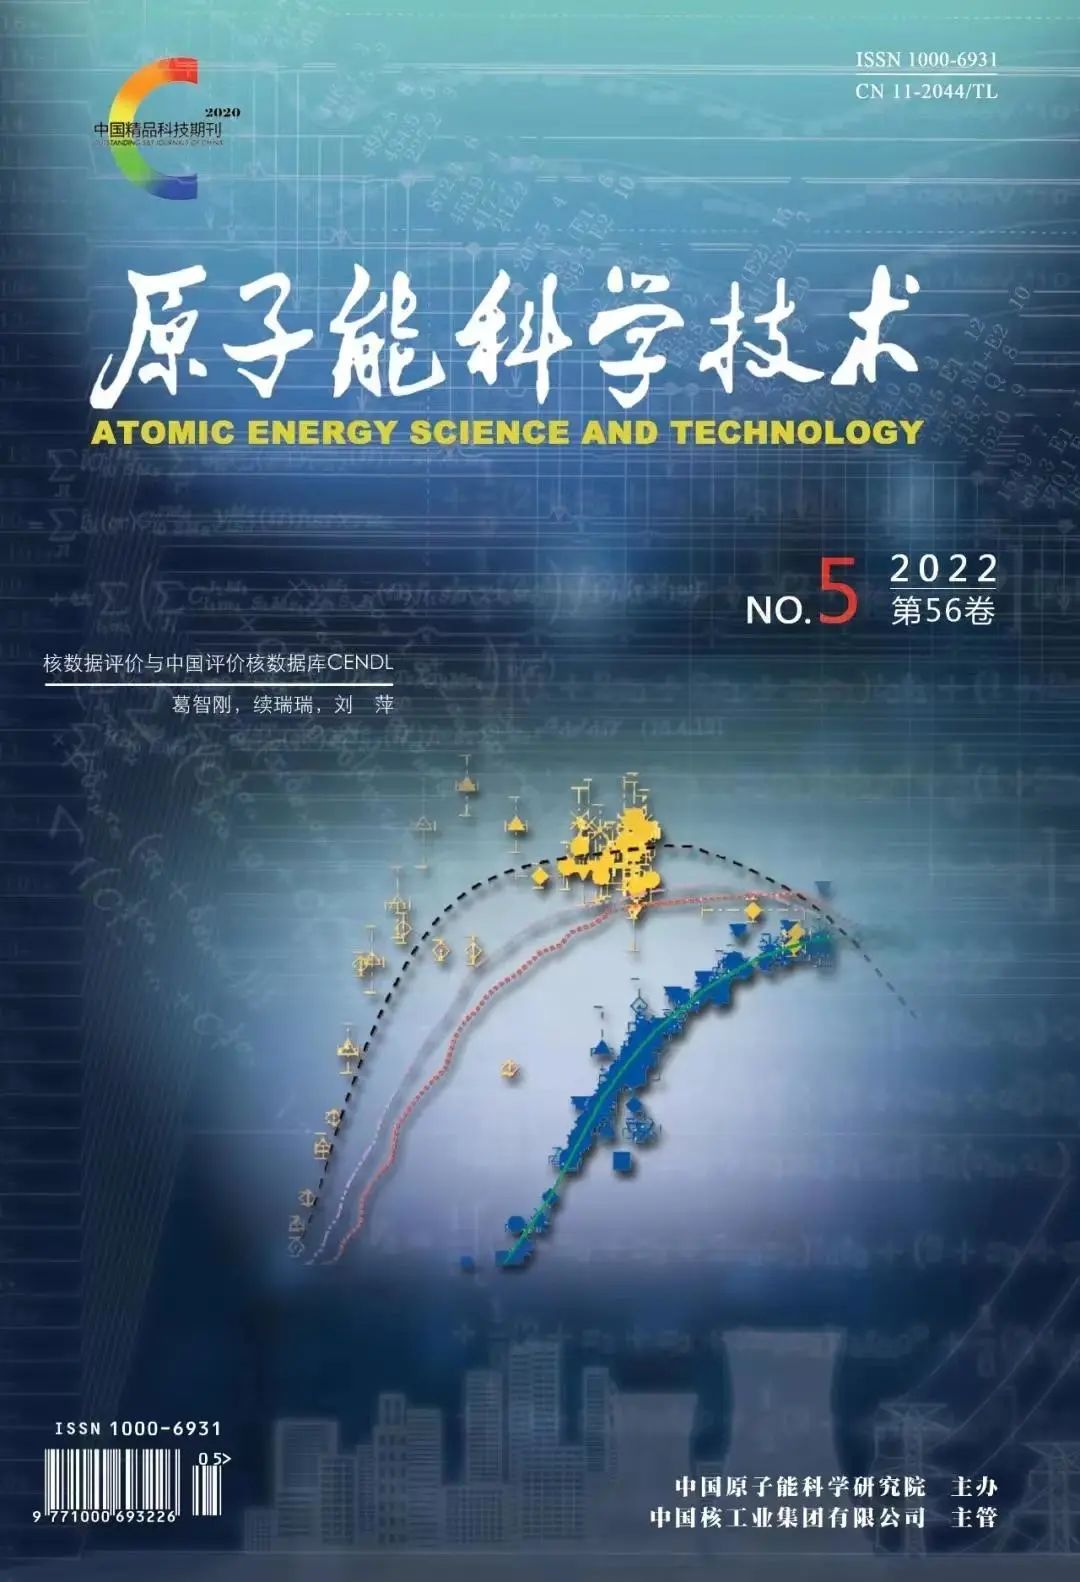 《原子能科学技术》在我国核科技期刊中学术影响力指数排名第一